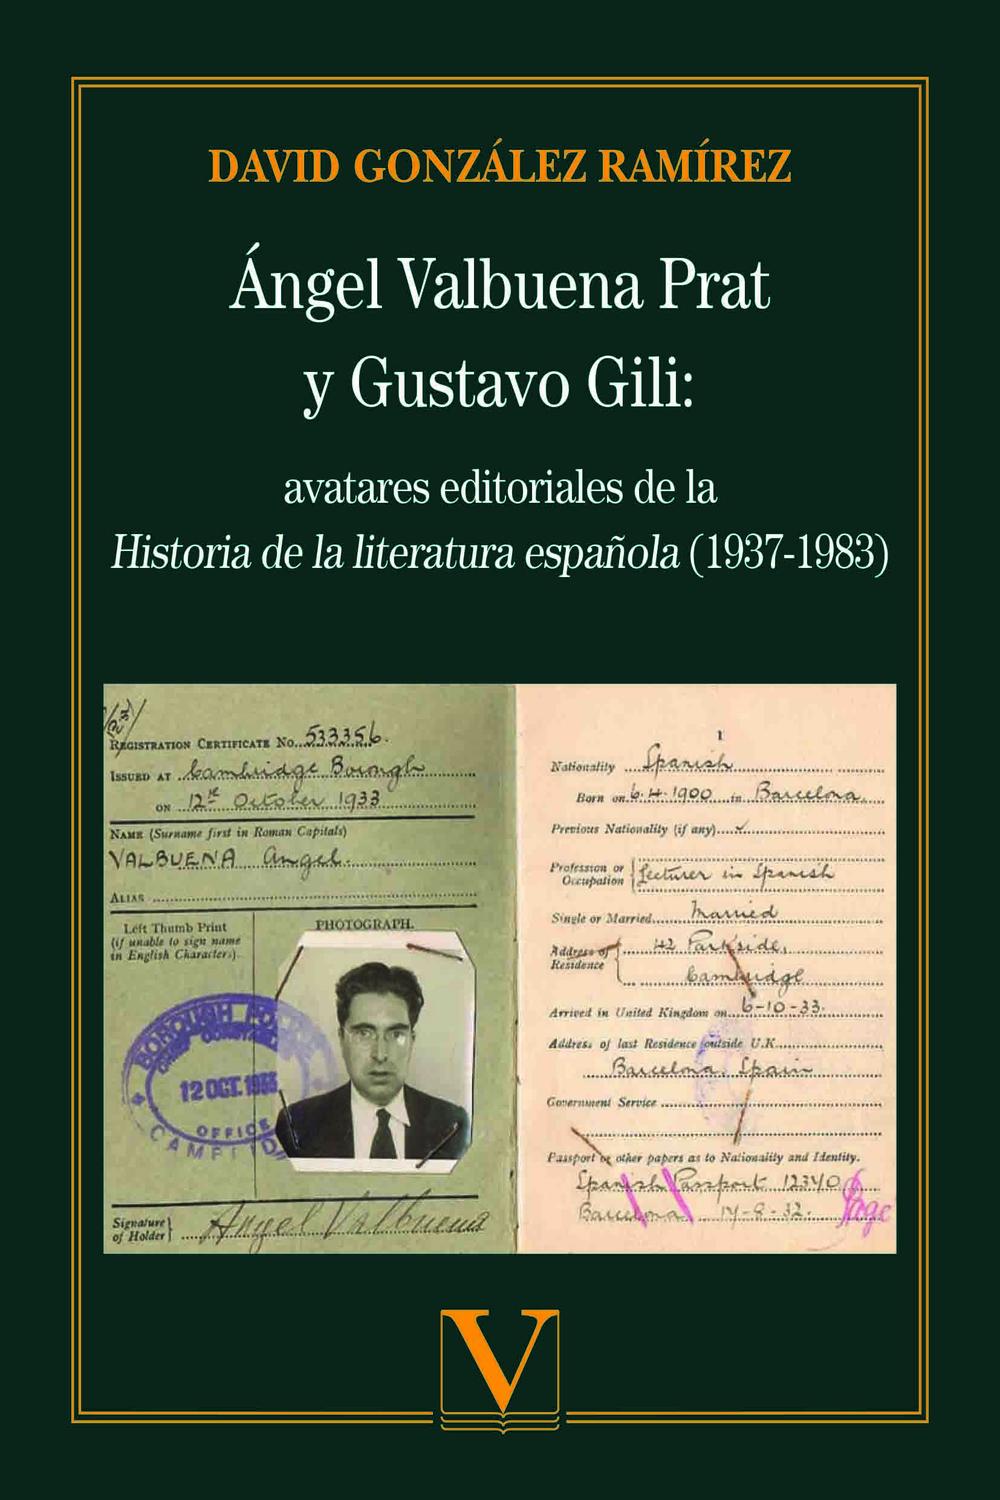 Ángel Valbuena Prat y Gustavo Gili: avatares editoriales de la Historia de la literatura española (1937-1983) - González Ramírez,David